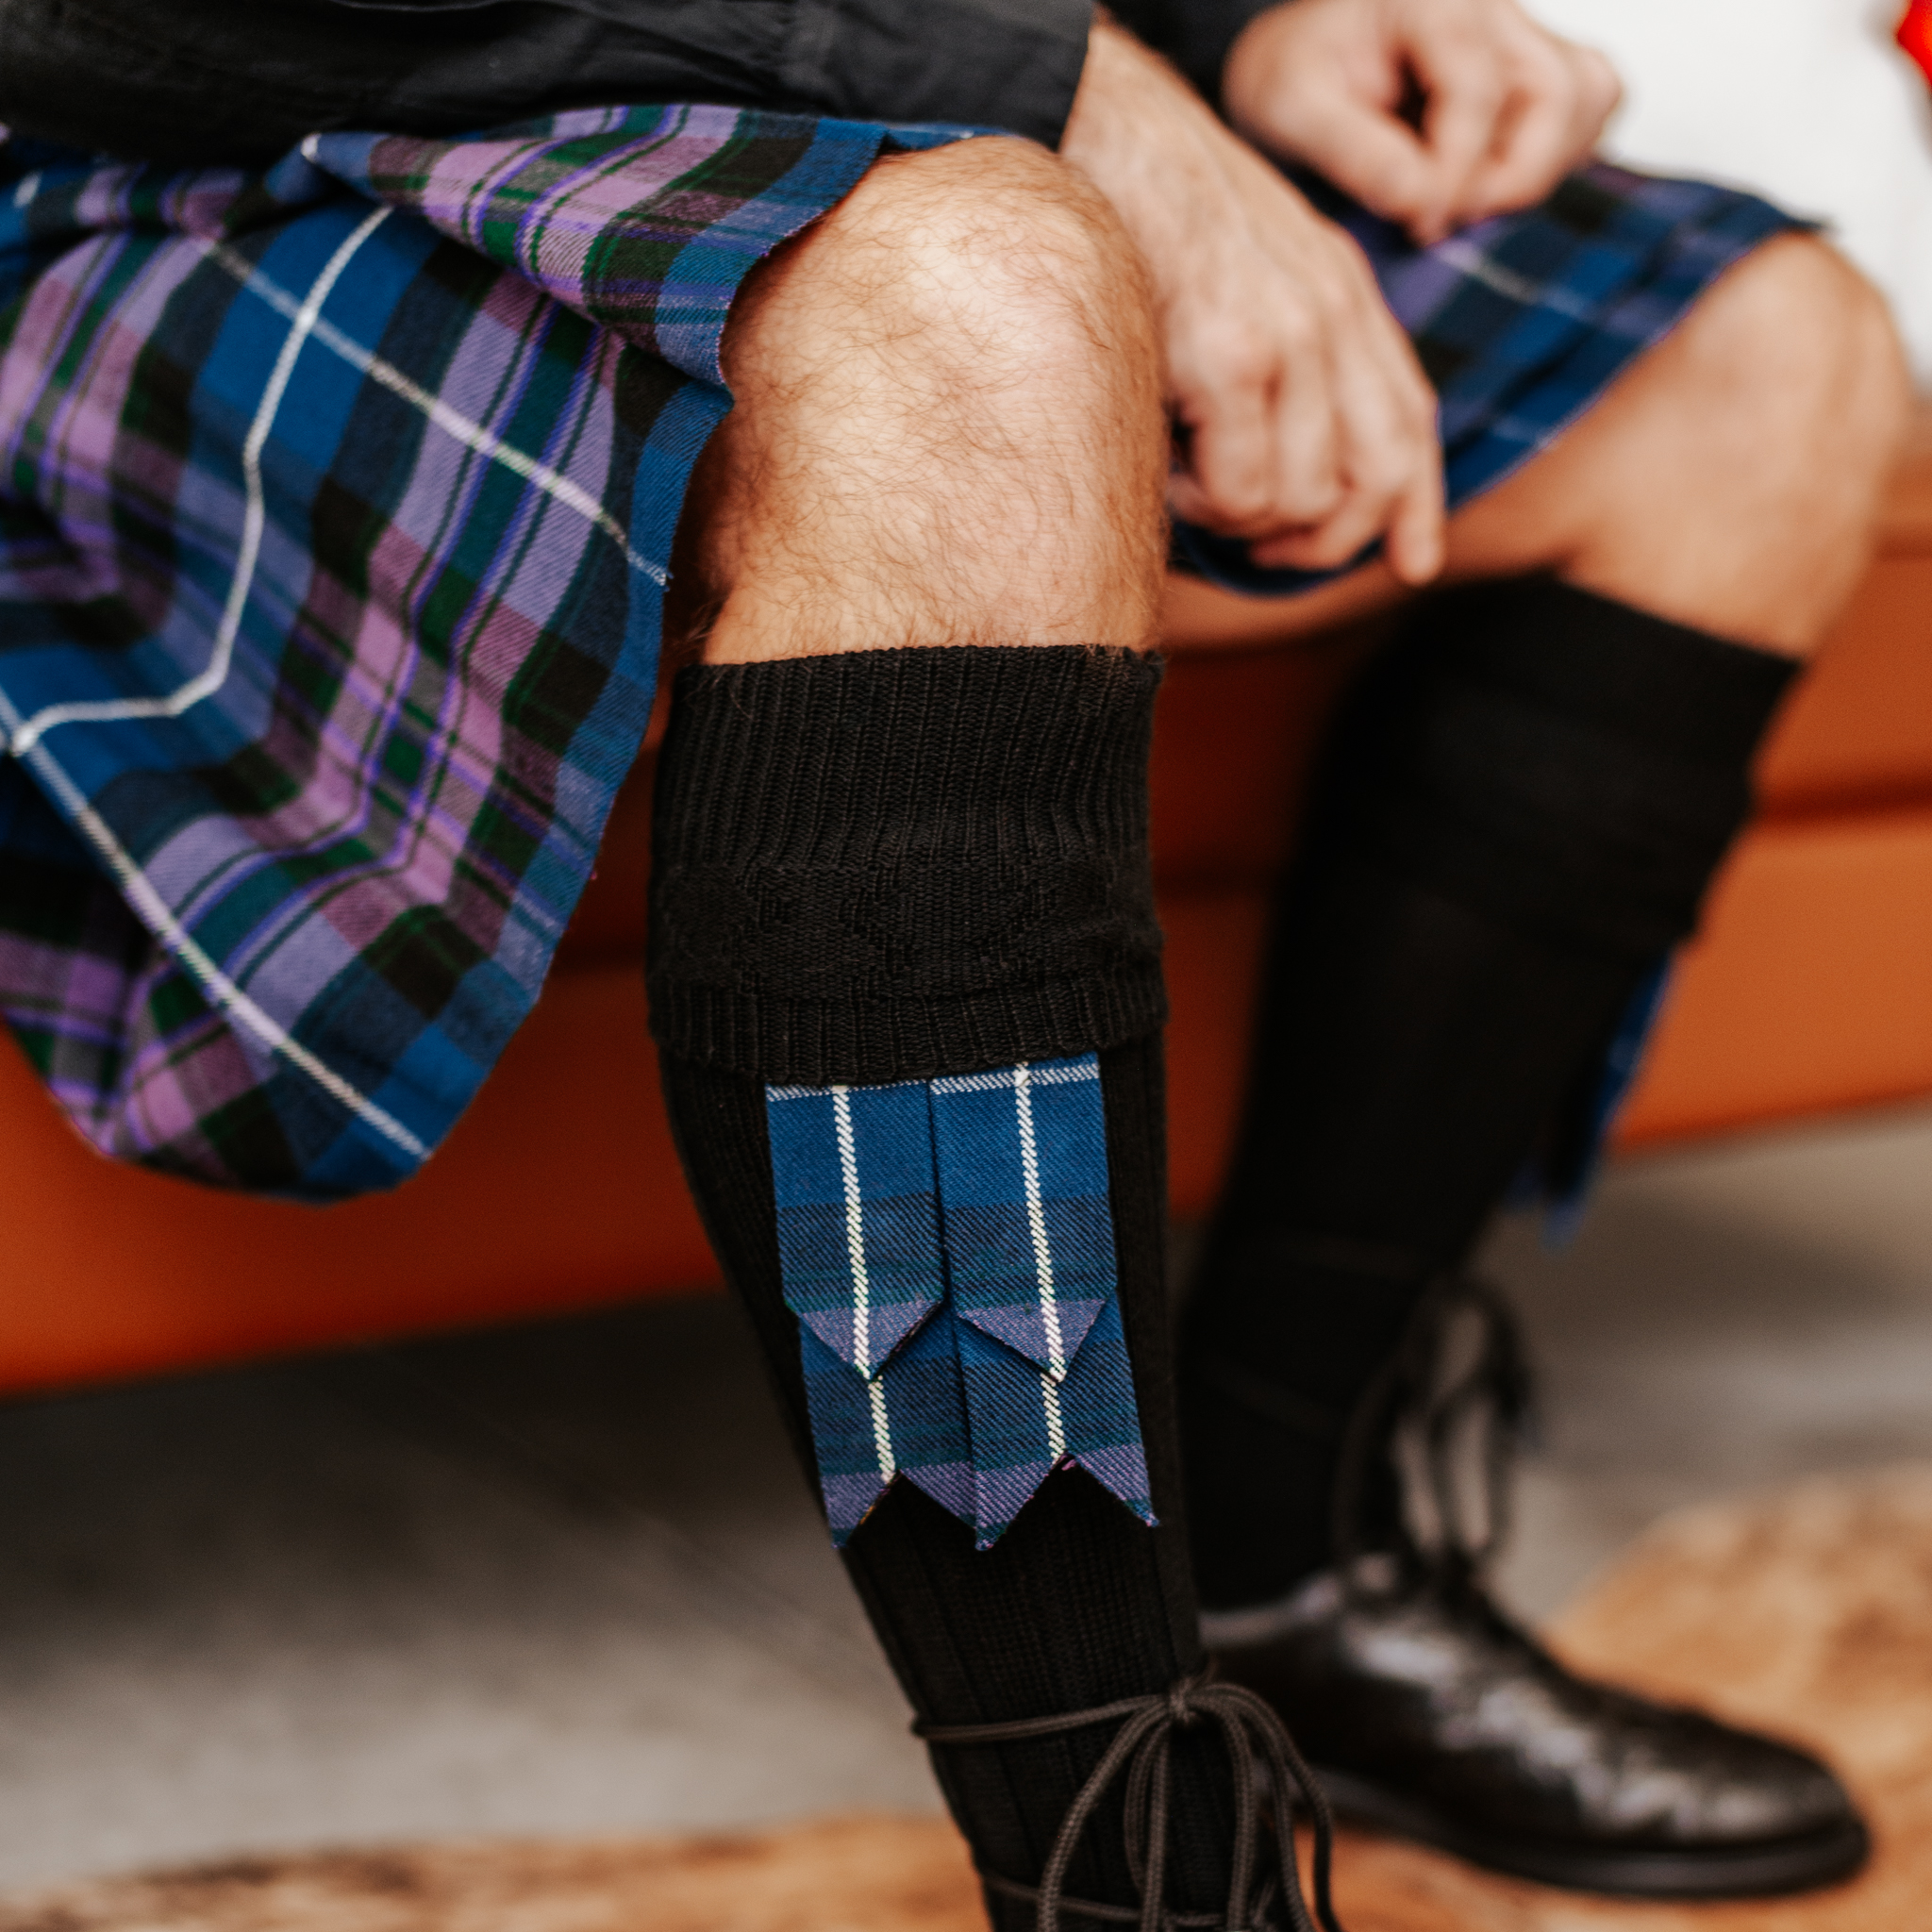 New Scottish Irish Kilt Hose Socks Men Sporrans Flashes In SIX Colors 